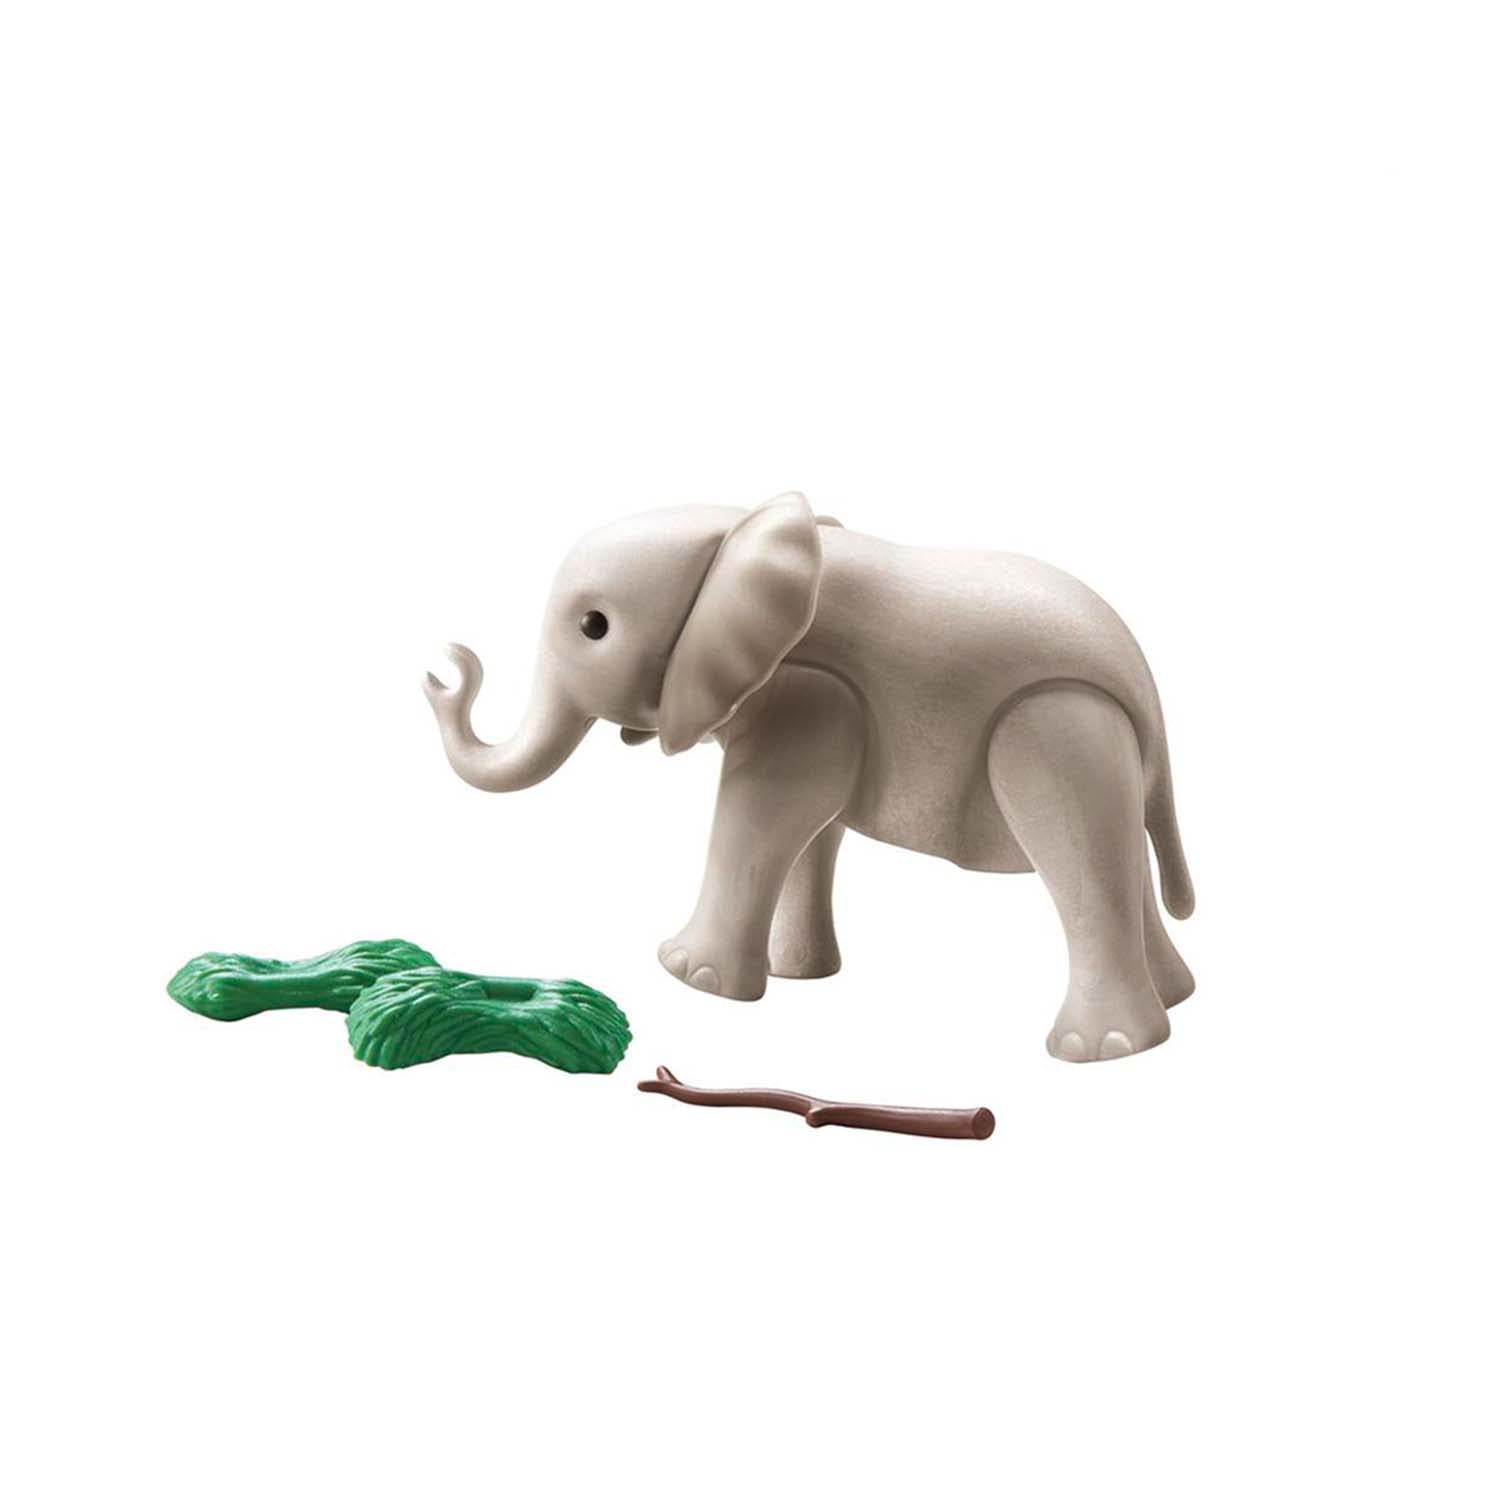 Playmobil Wiltopia Baby Elephant Figure - Elephant Gifts